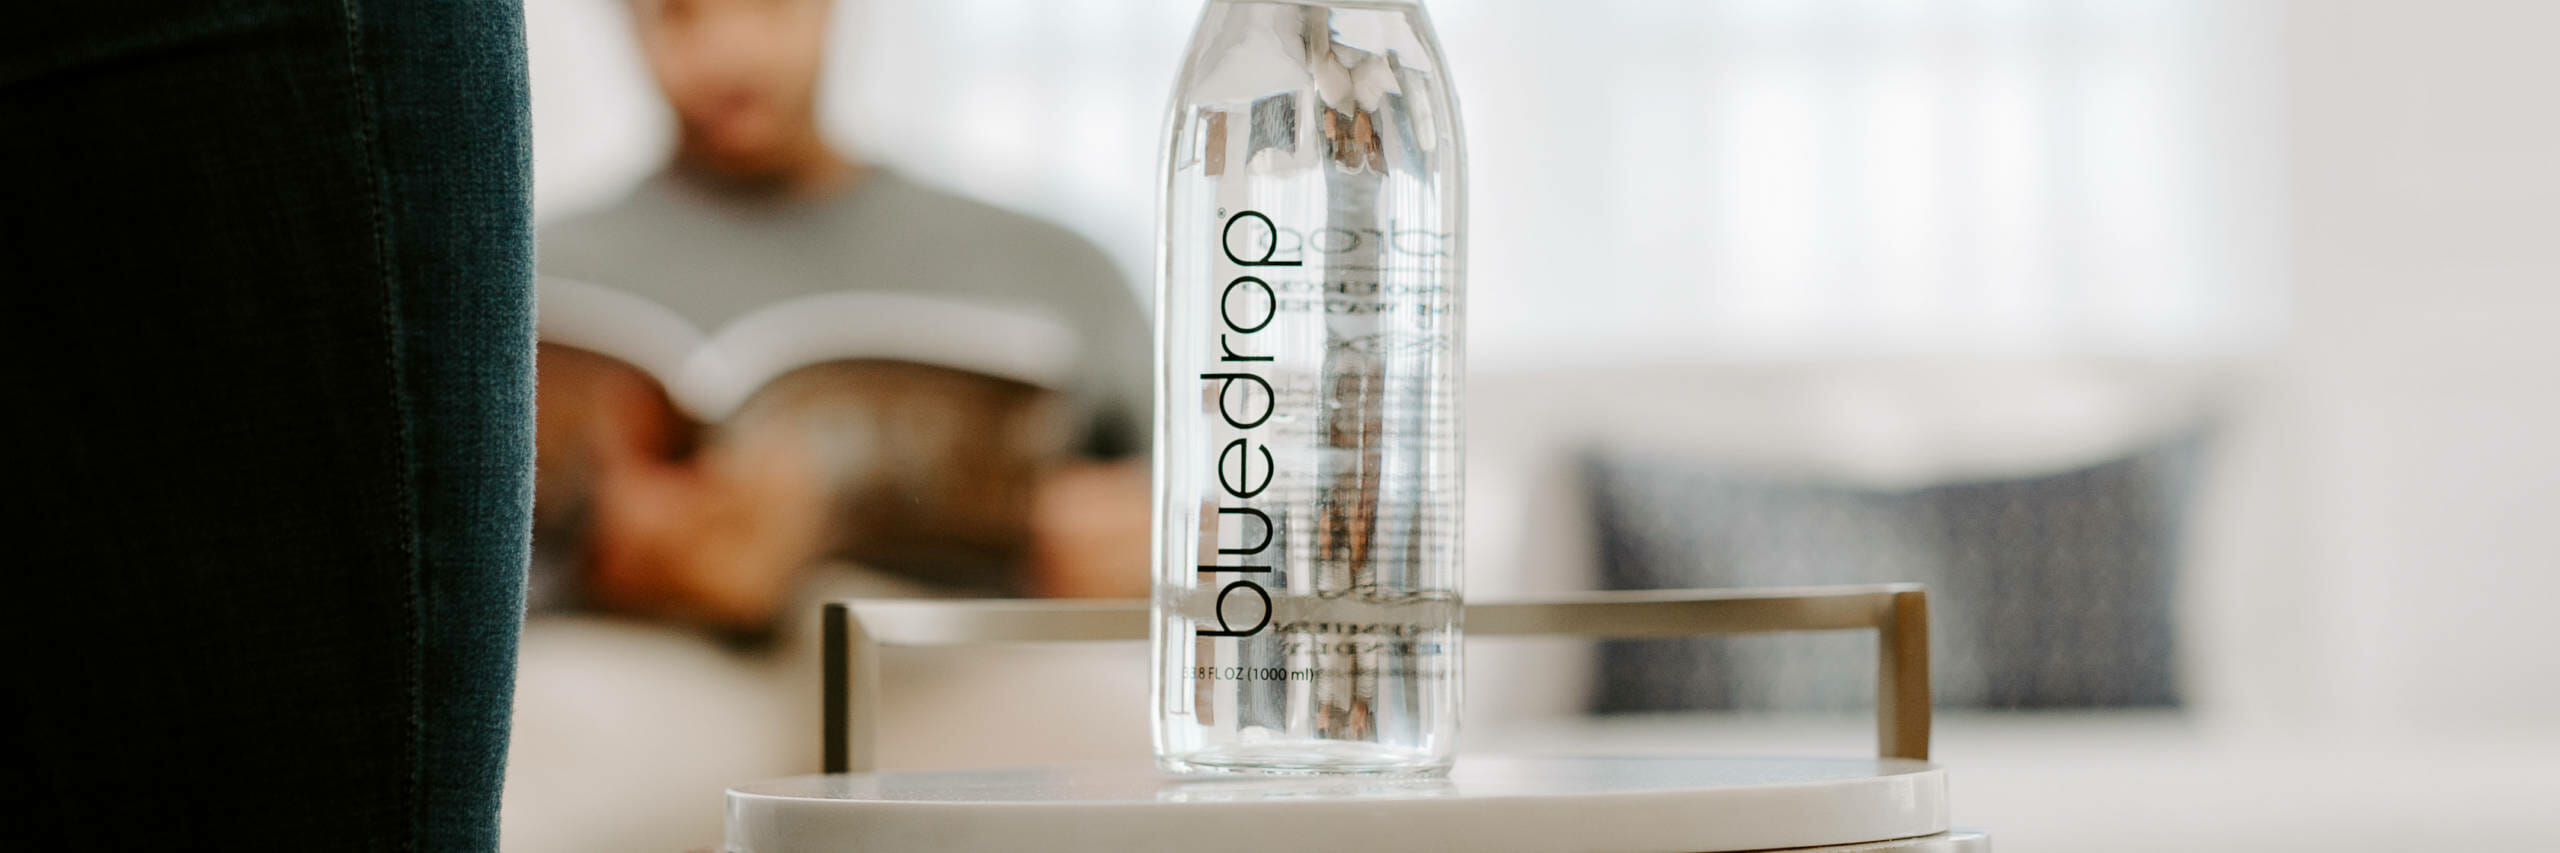 A custom bottle of bluedrop water.